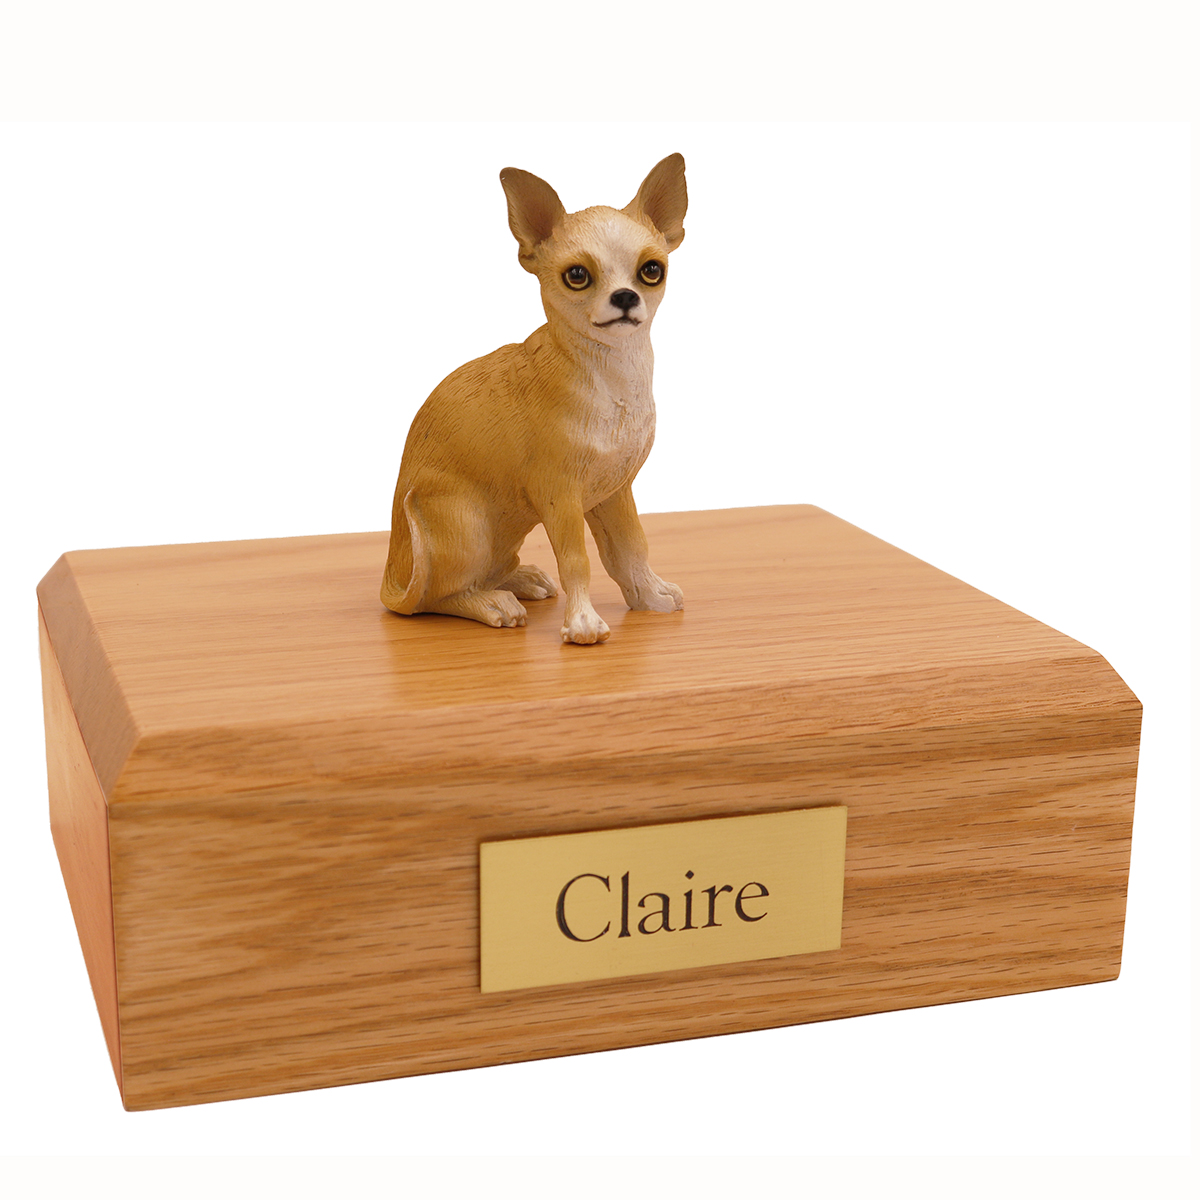 Dog, Chihuahua, White/Tan - Figurine Urn